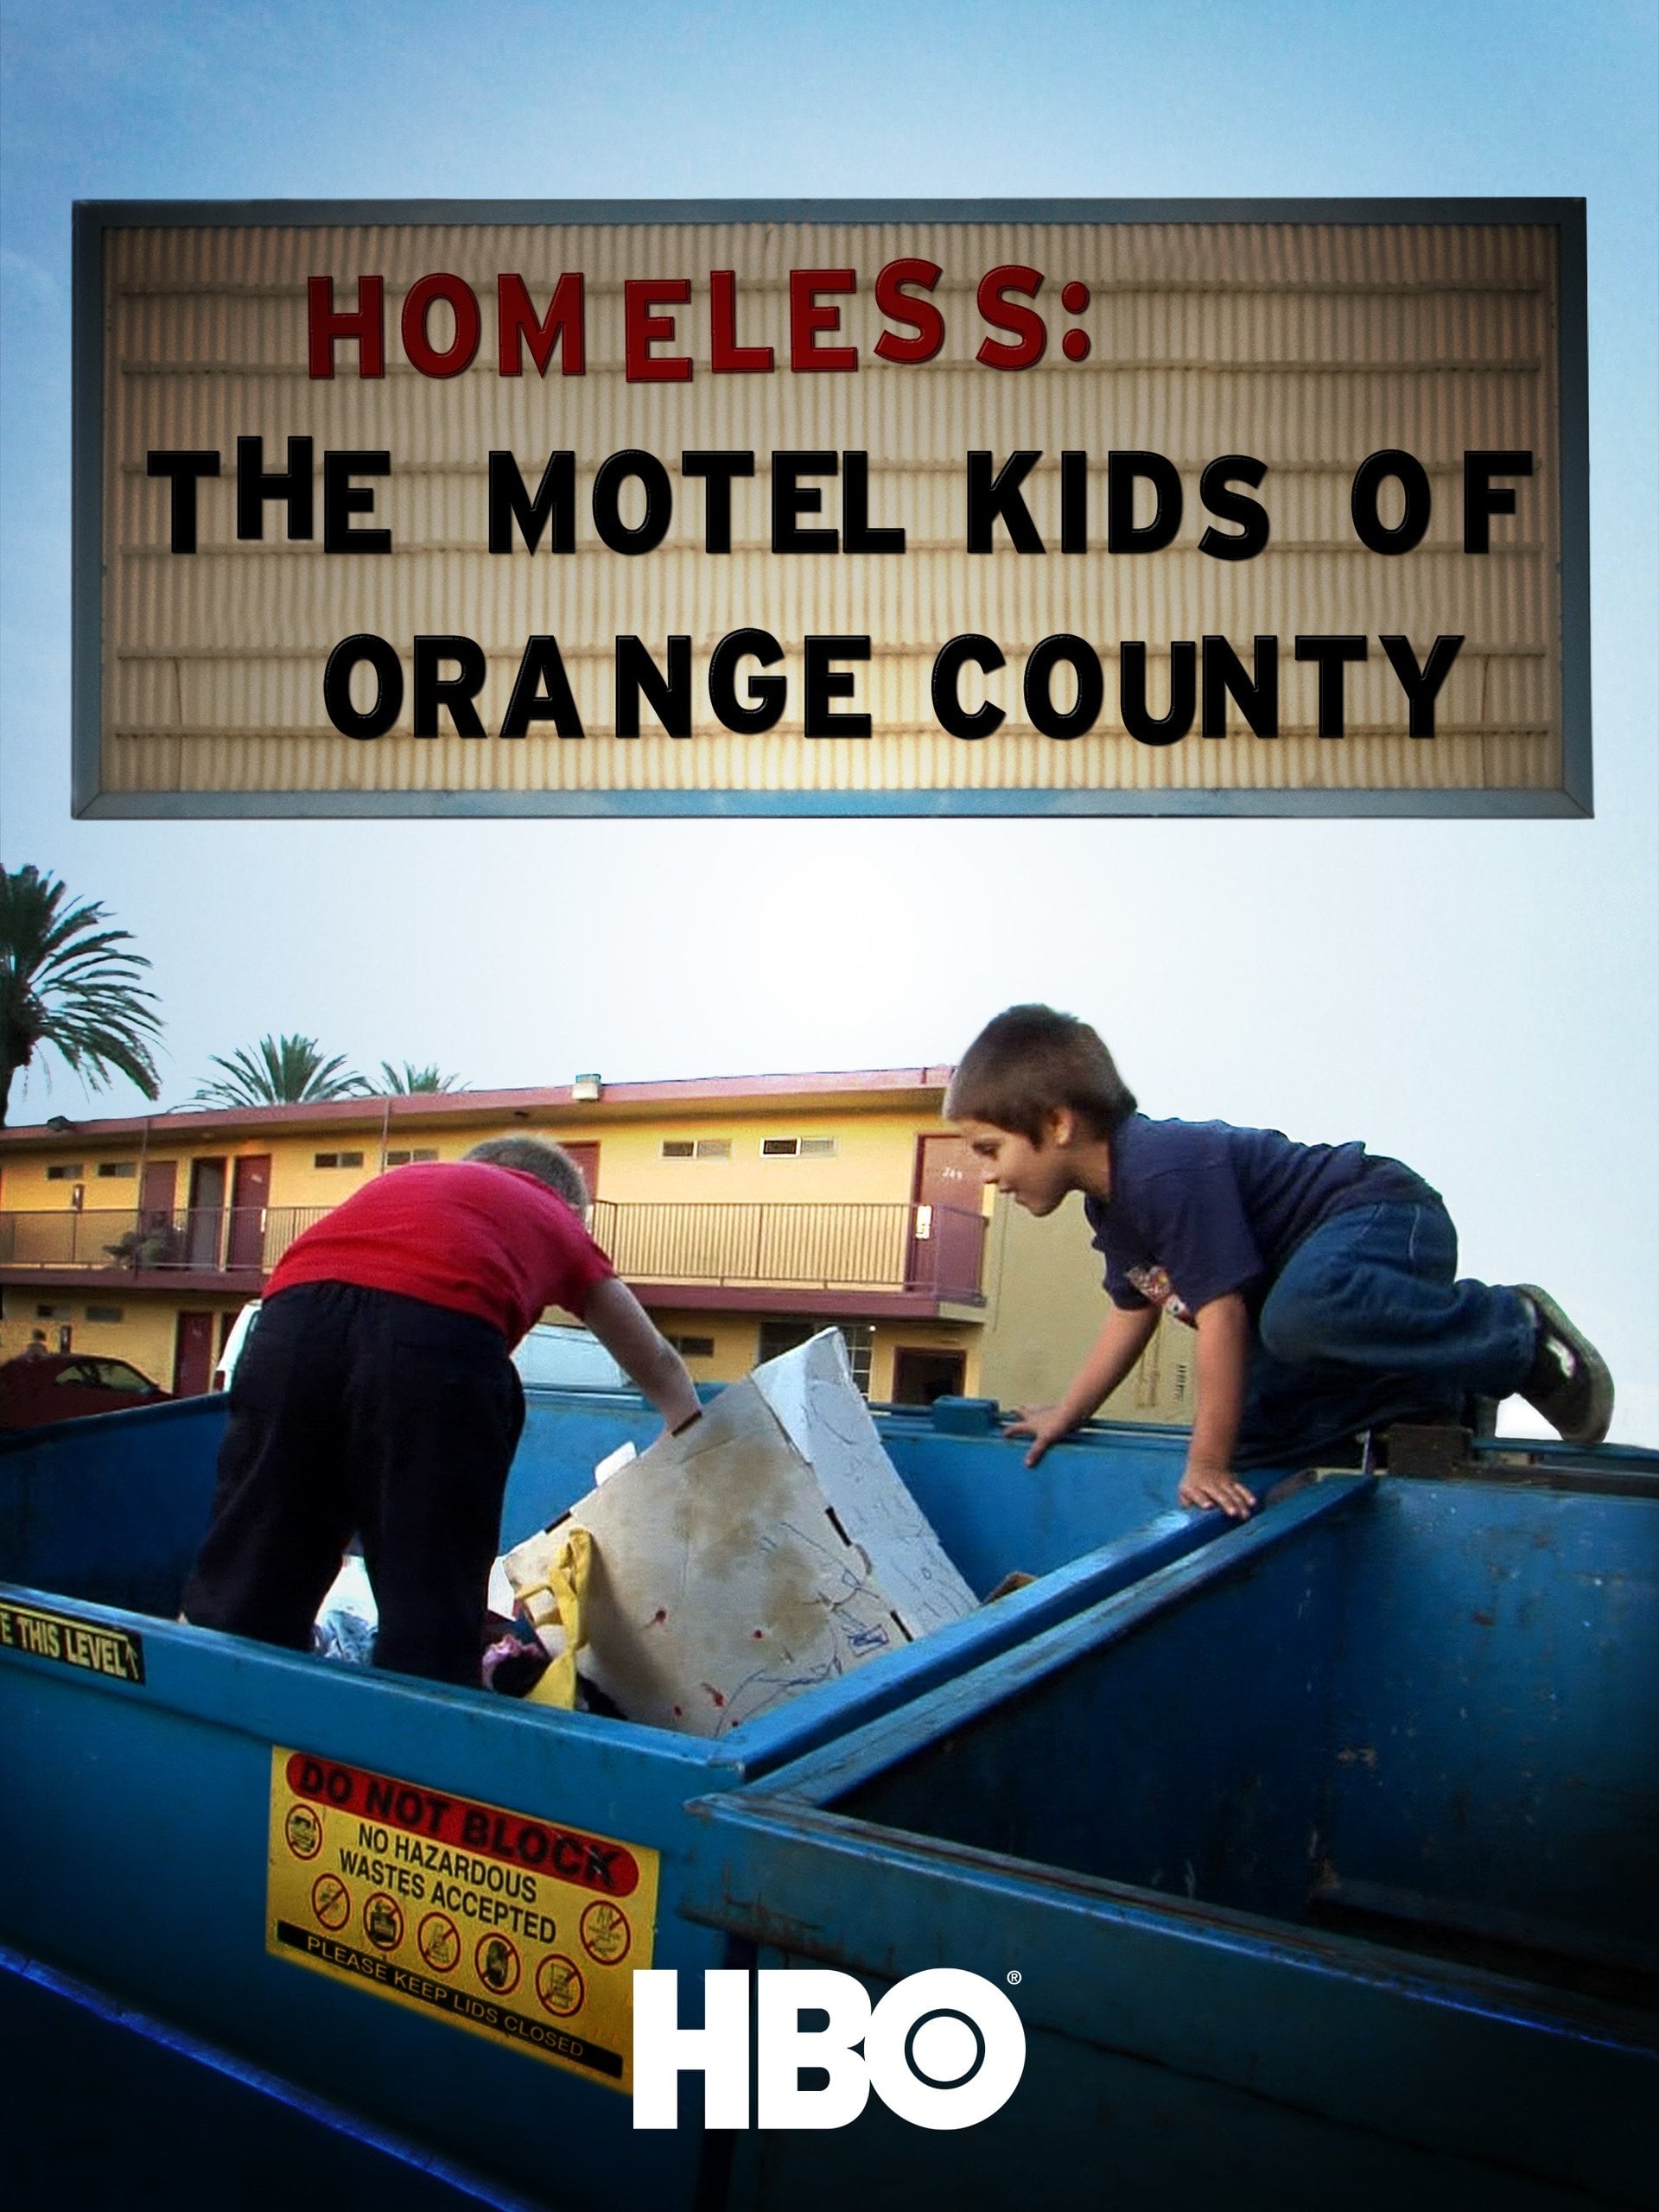 Caratula de Homeless: The Motel Kids of Orange County (Sin hogar: el motel infantil del condado de Orange) 